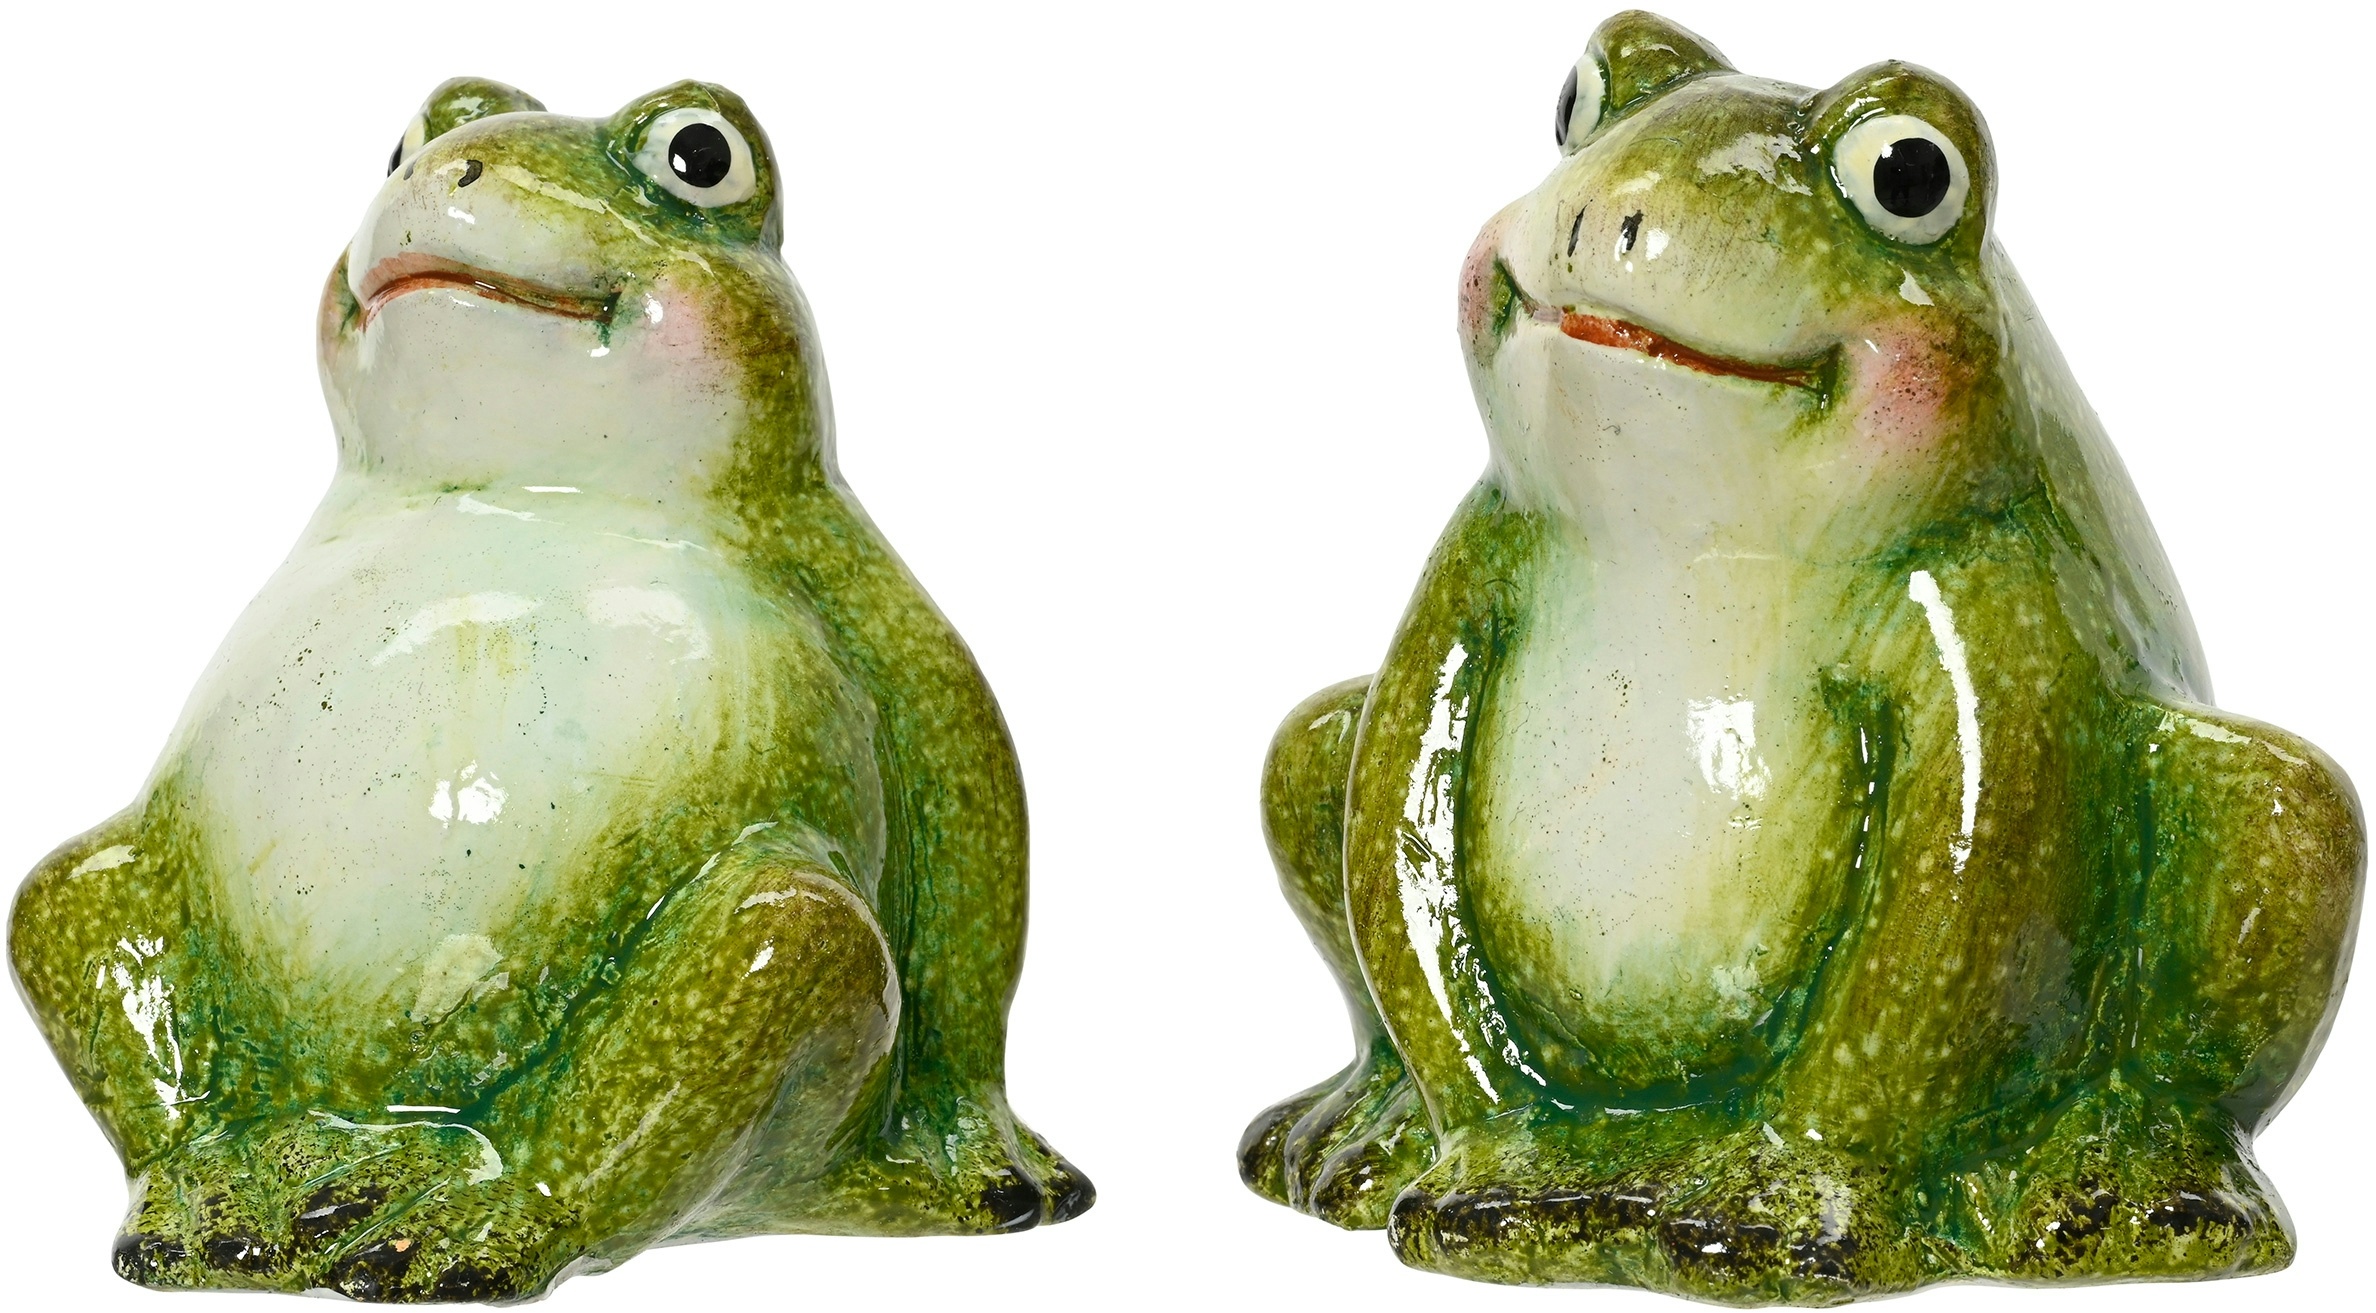 Decoris Dekofigur Frosch 6x7cm Keramik grün 1 Stück sortiert - Gartendeko Kröte - Kleine Gartenstatue Garten Deko Tierfigur - Dekofigur Draußen Vorgarten